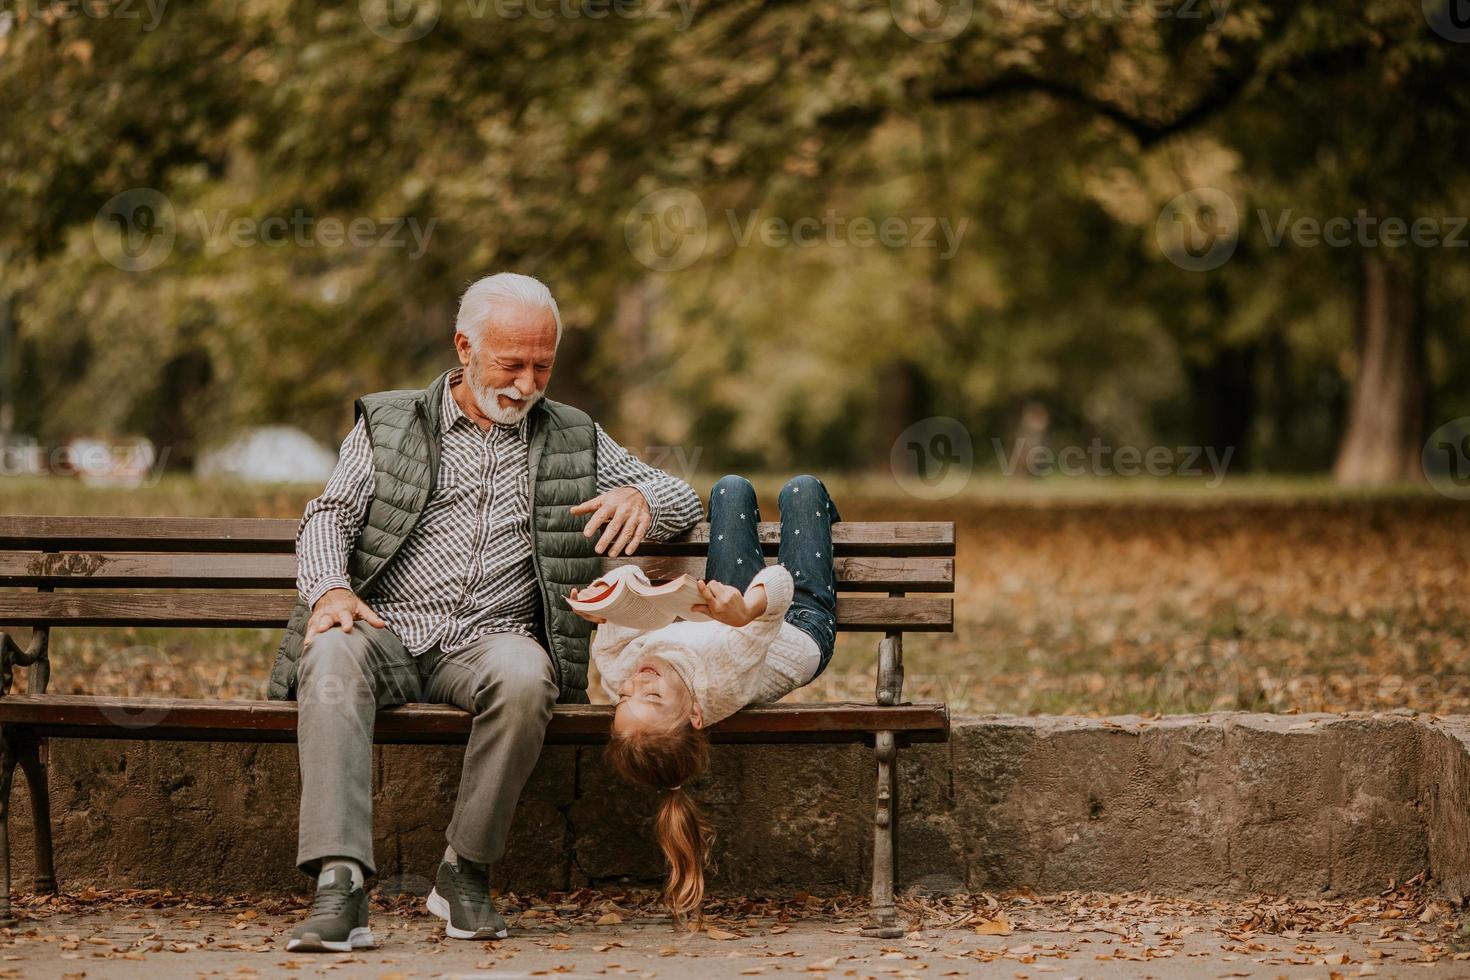 farfar utgifterna tid med hans barnbarn på bänk i parkera på höst dag foto